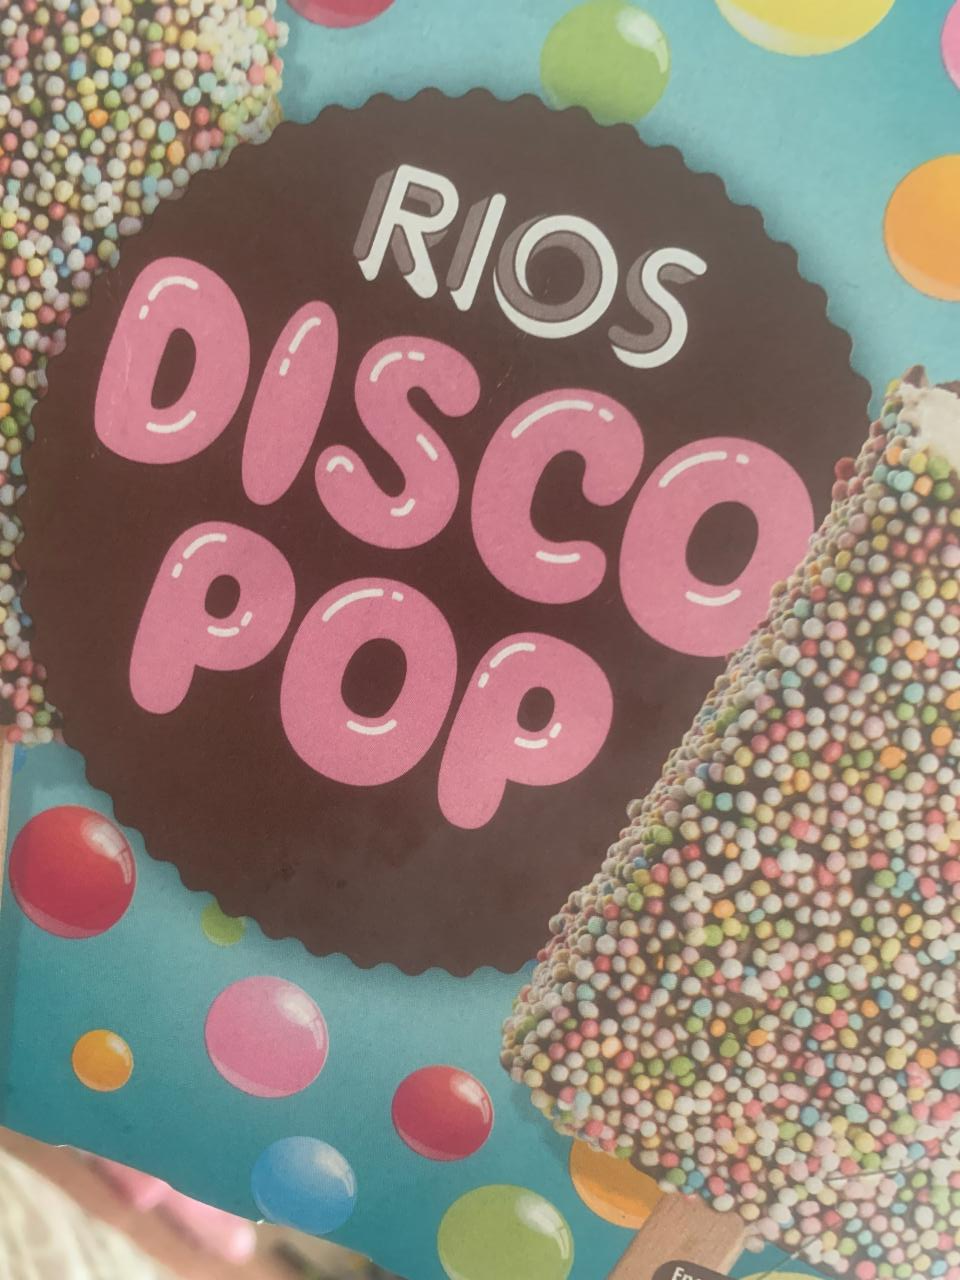 Фото - Rios disco pop